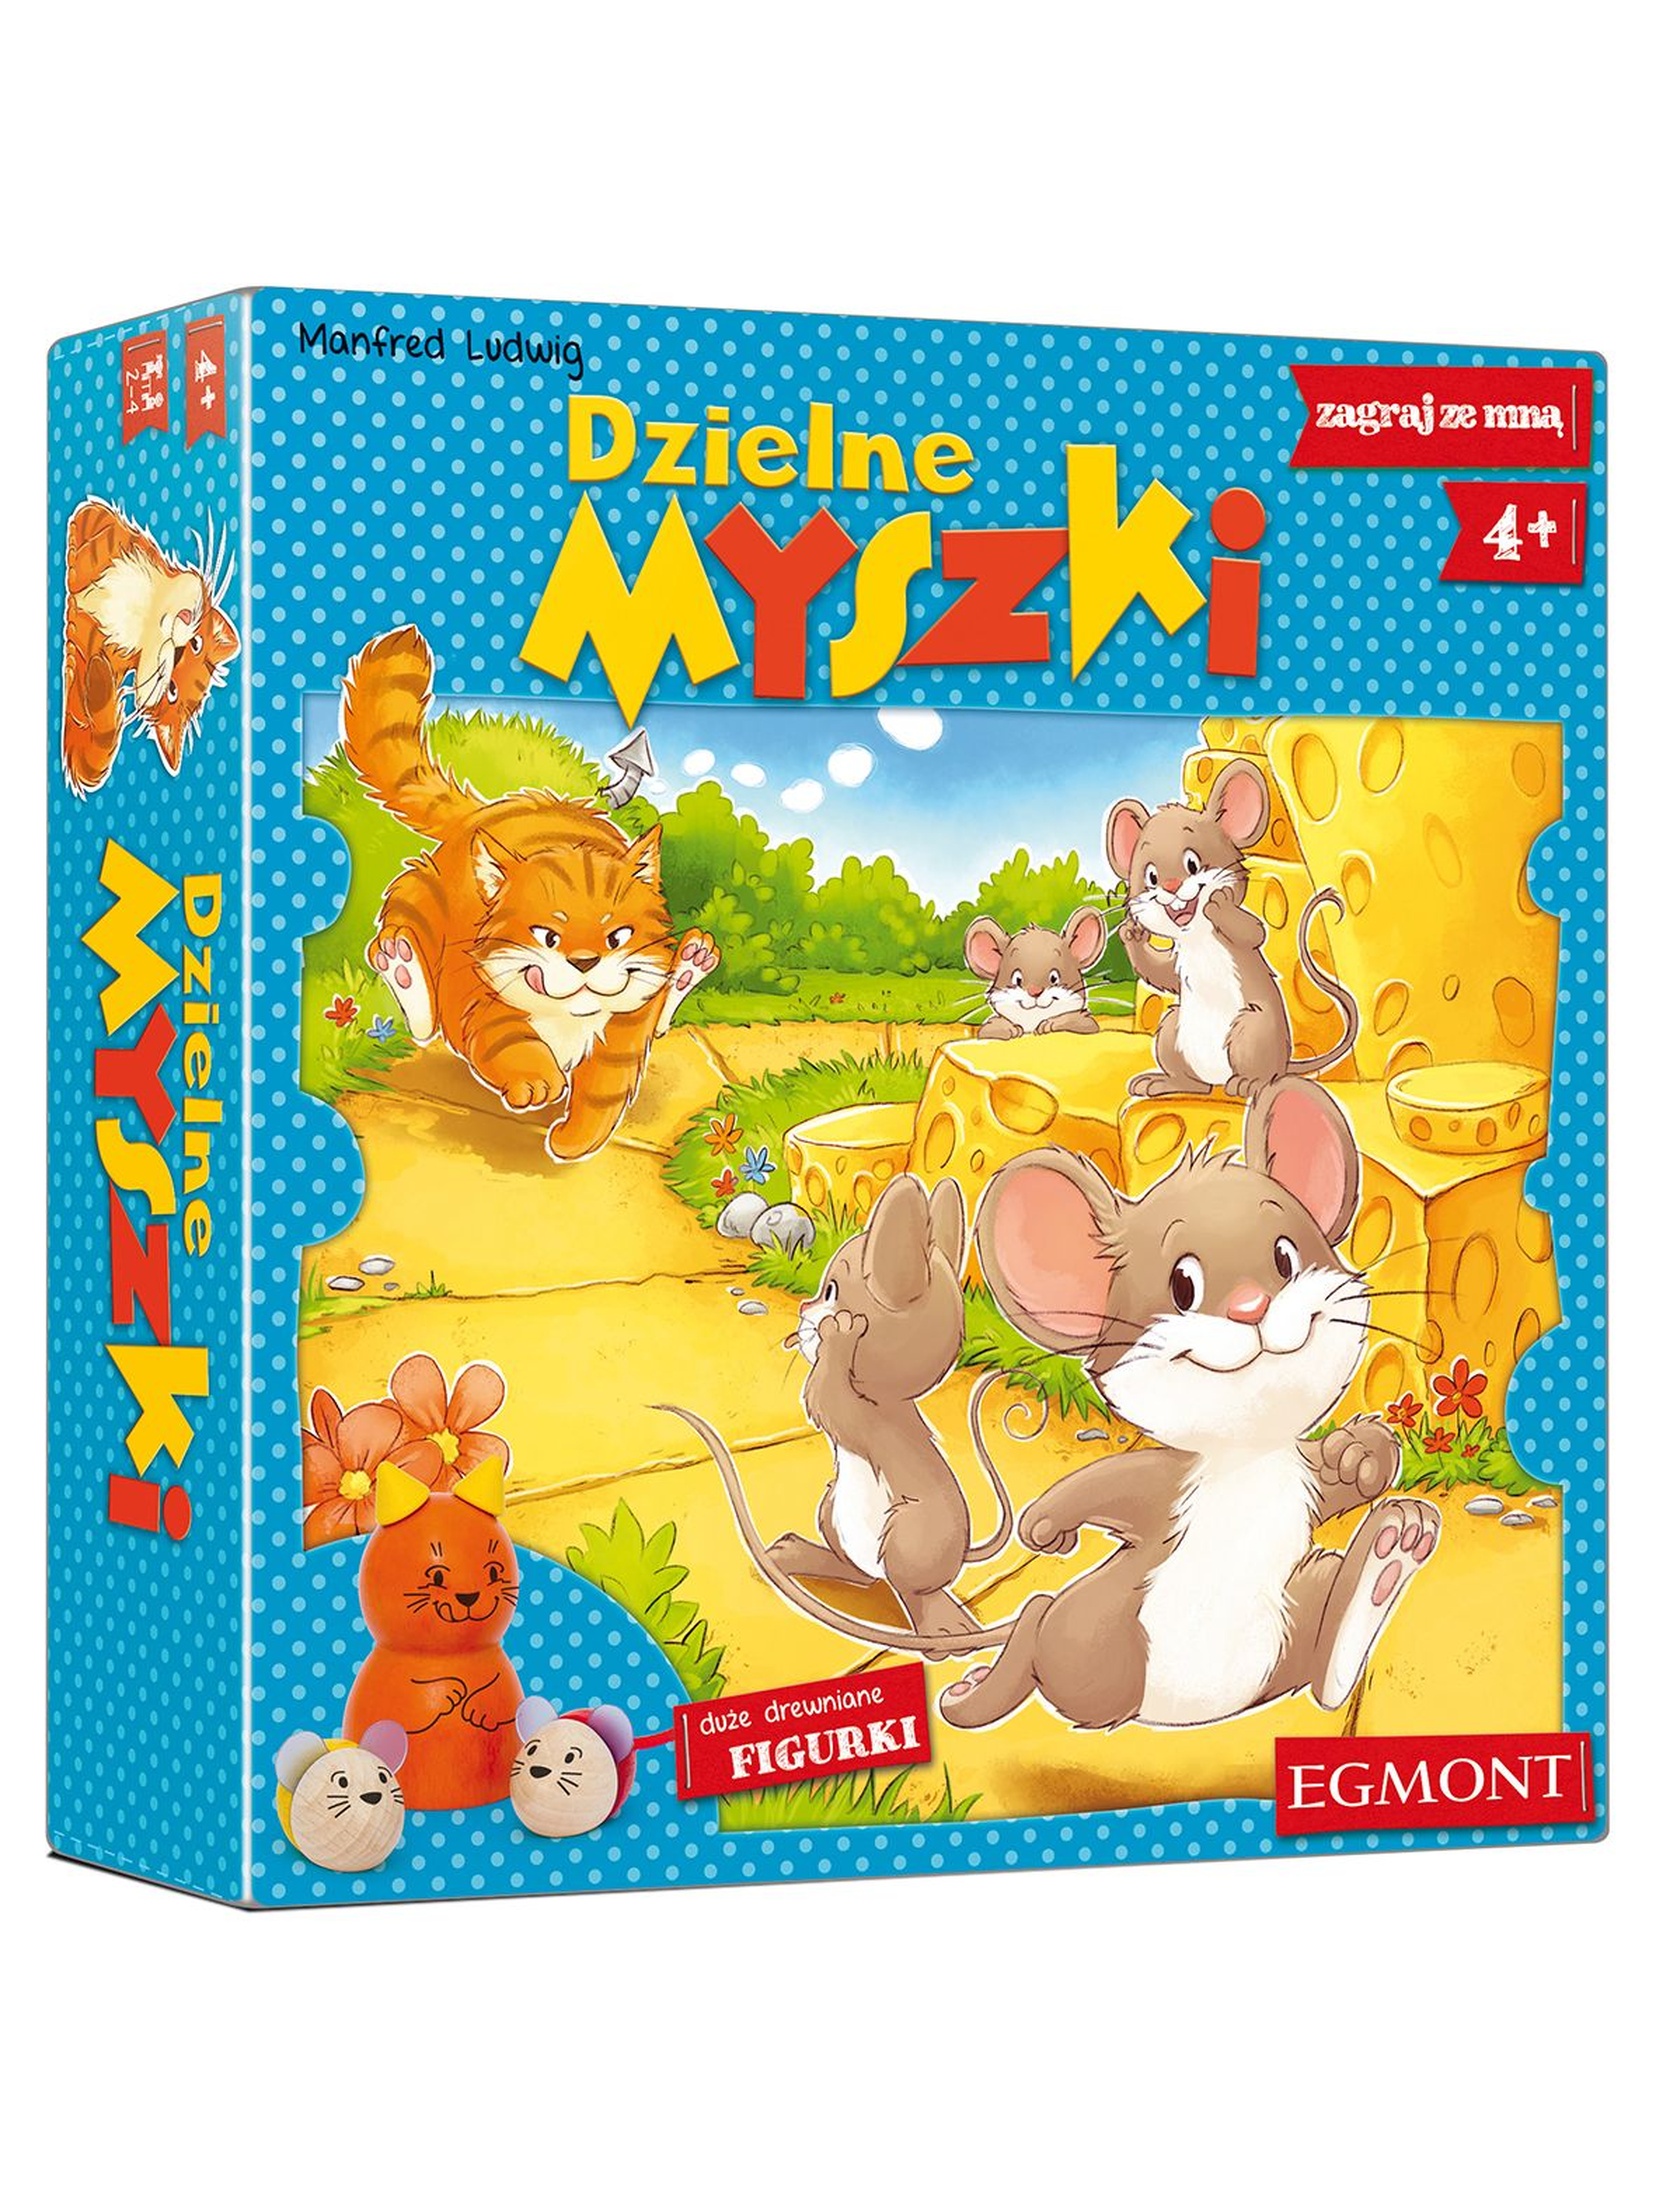 Gra planszowa dla dzieci- Dzielne myszki wiek 4+